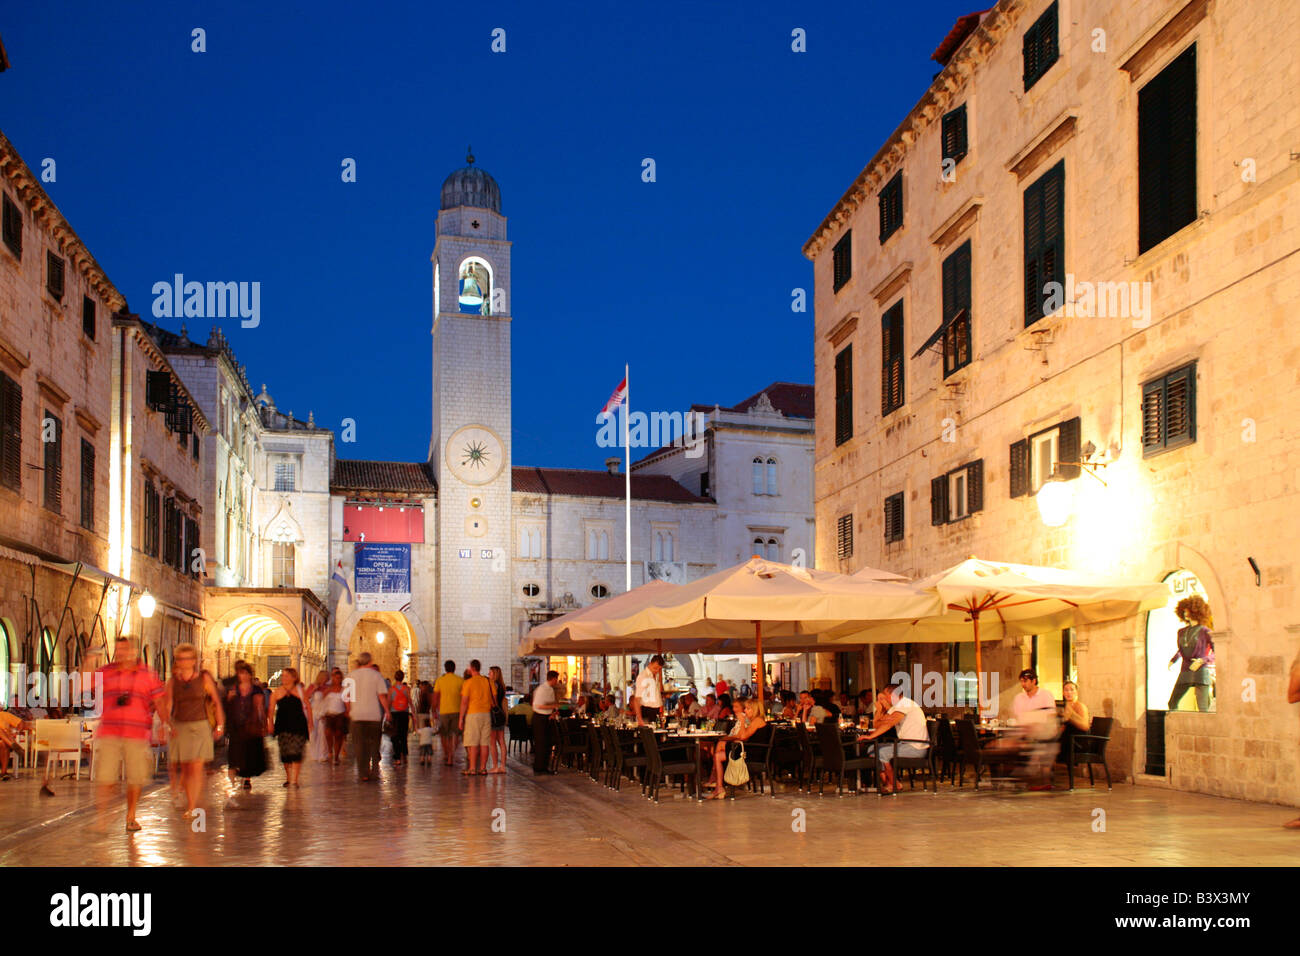 Soirée photo de la rue principale Stradun dans la vieille ville de Dubrovnik, en République de Croatie, l'Europe de l'Est Banque D'Images